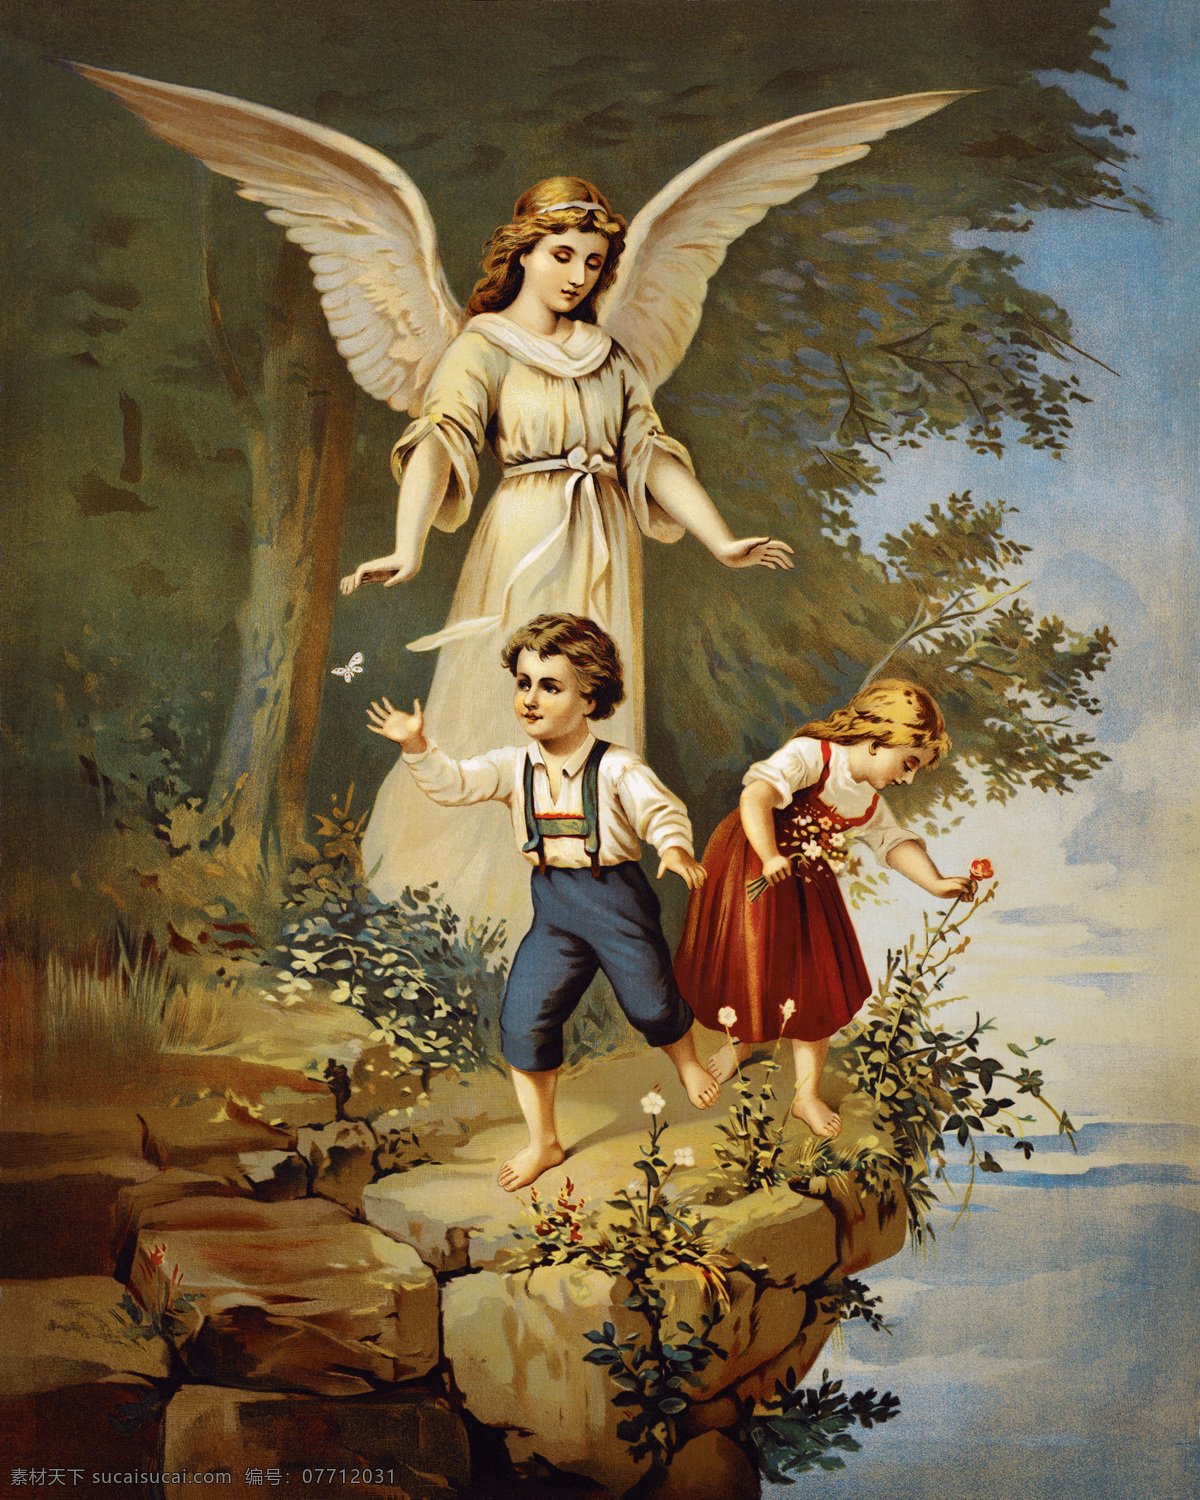 天使 童男童女 背景 墙 欧洲 欧式 复古 油画 人物 圣经故事 基督教 宗教 背景墙 背景图片 装饰画 免费素材下载